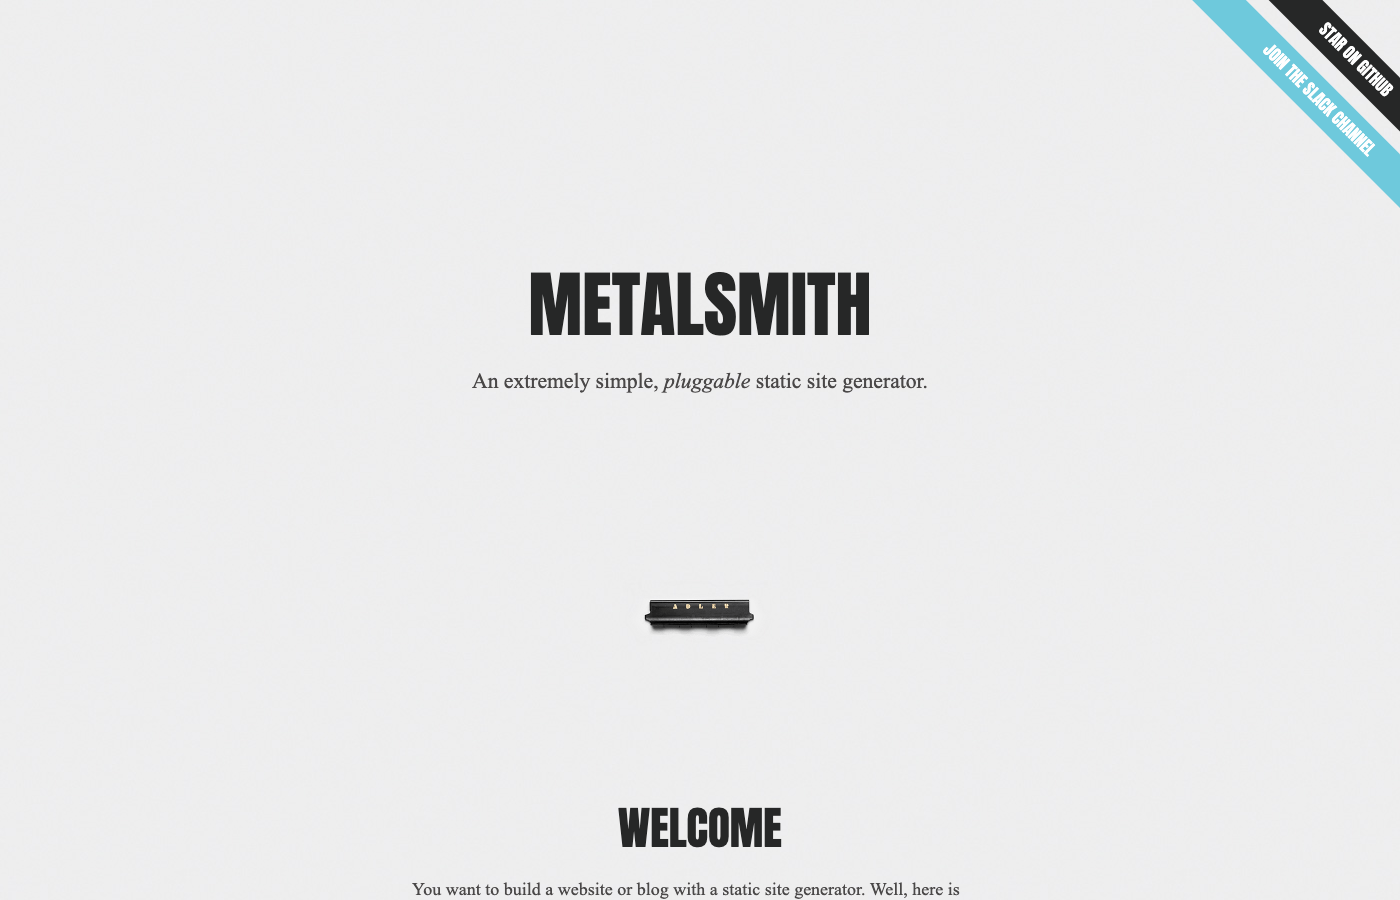 Metalsmith